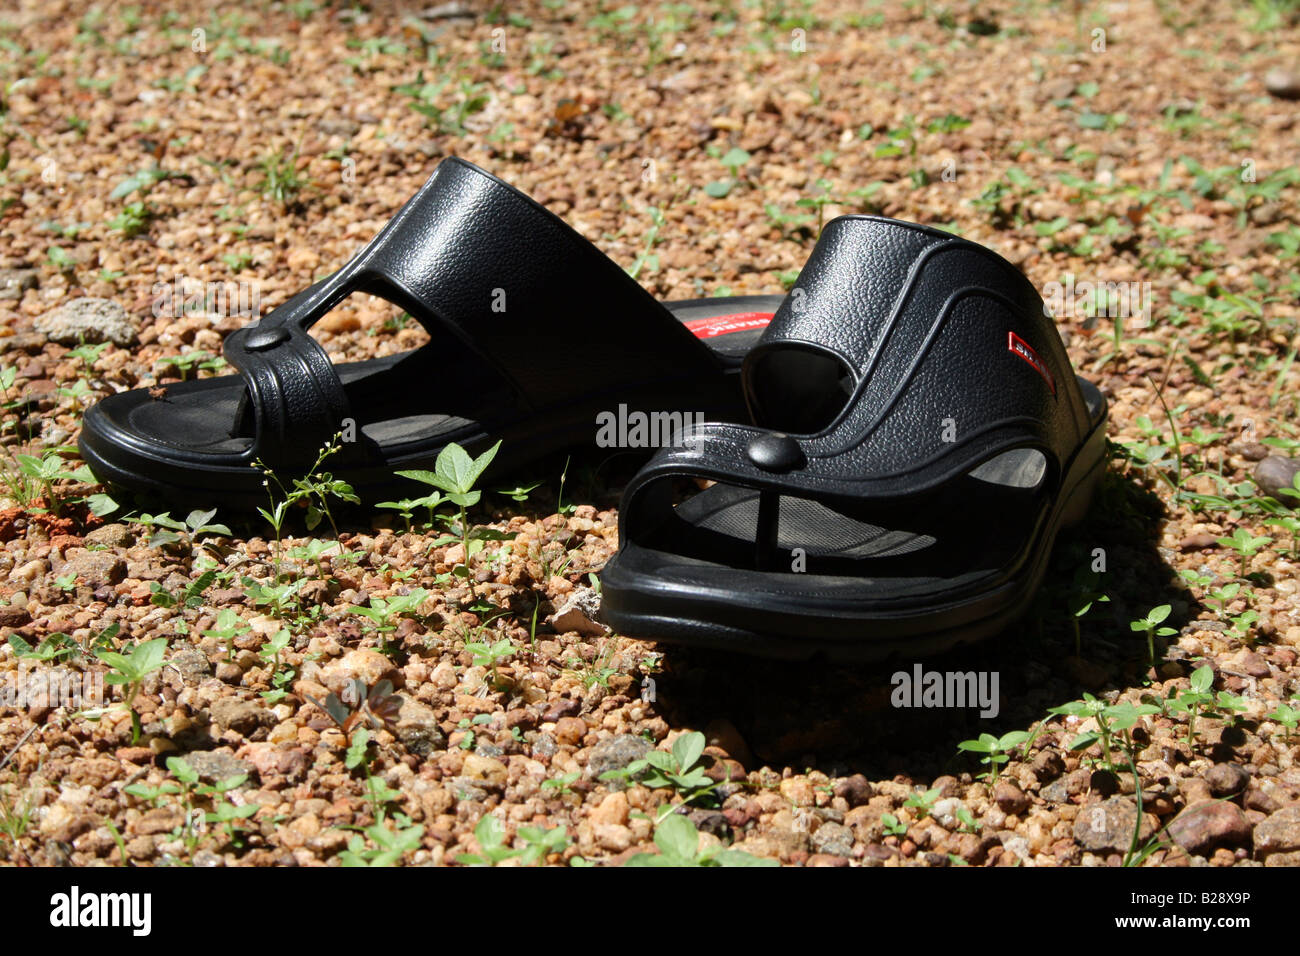 Schwarz offen toe Sandalen aus Leder hergestellt in Indien gehalten, um trocken unter der Sonne auf rauem Untergrund Steinchen Kies und Gras neue Stockfoto